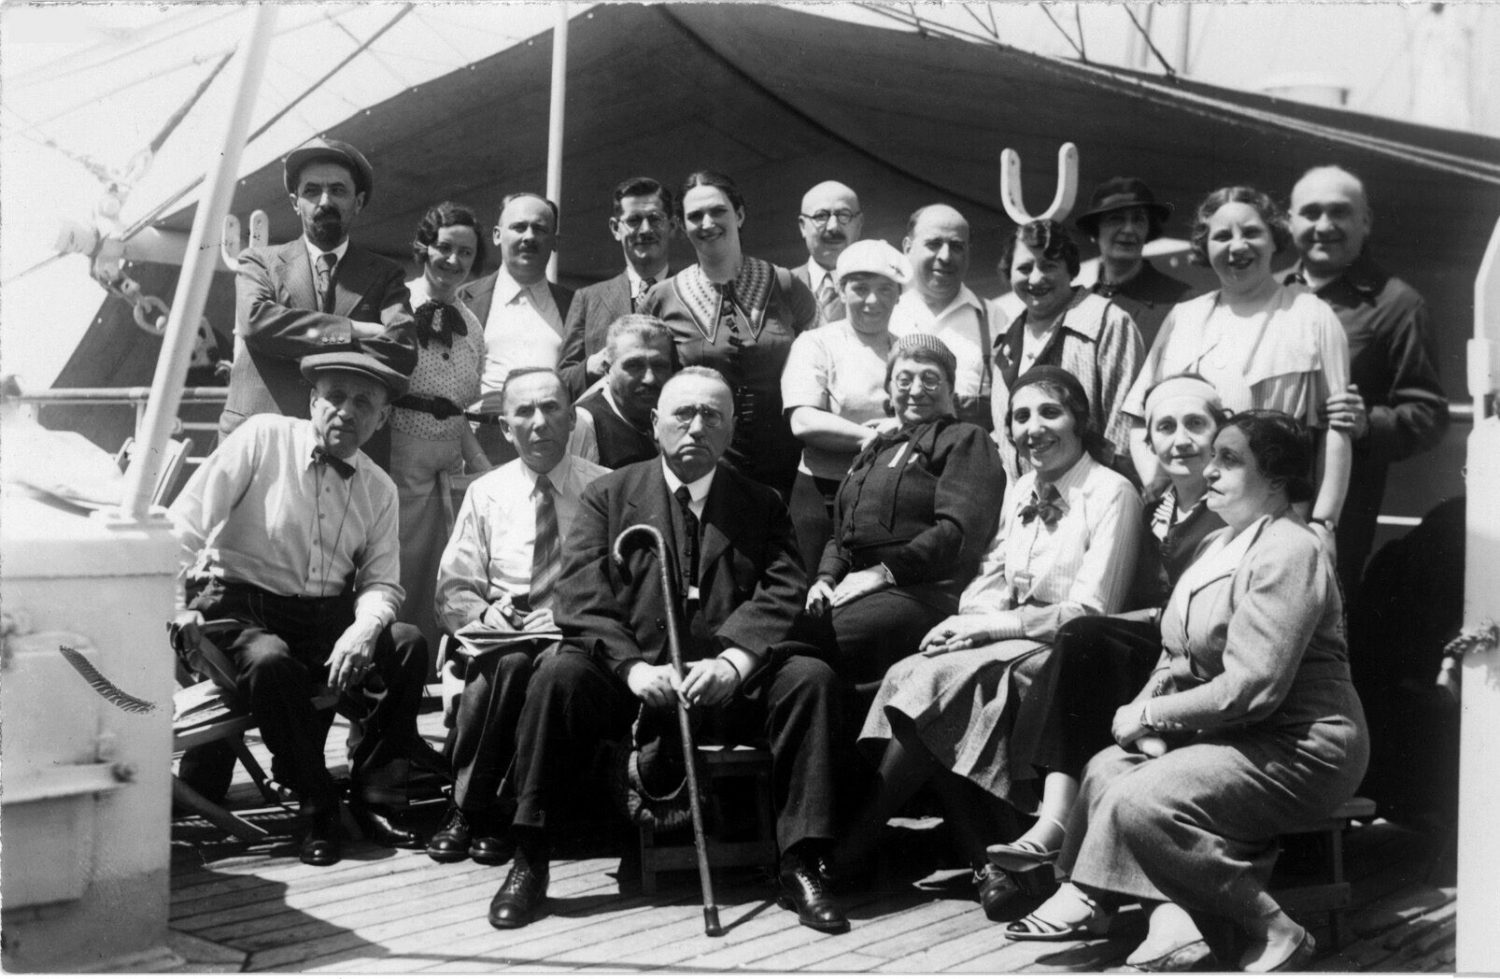 Székely Dávid mérnök (a hátsó sorban balról a negyedik) Patai József (a hátsó sorban középen szemüveggel) a Múlt és Jövő című folyóirat szervezésében egy szentföldi látogatásra érkező csoporthoz csatlakozott, hogy alijázzon, 1935 (magángyűjtemény)